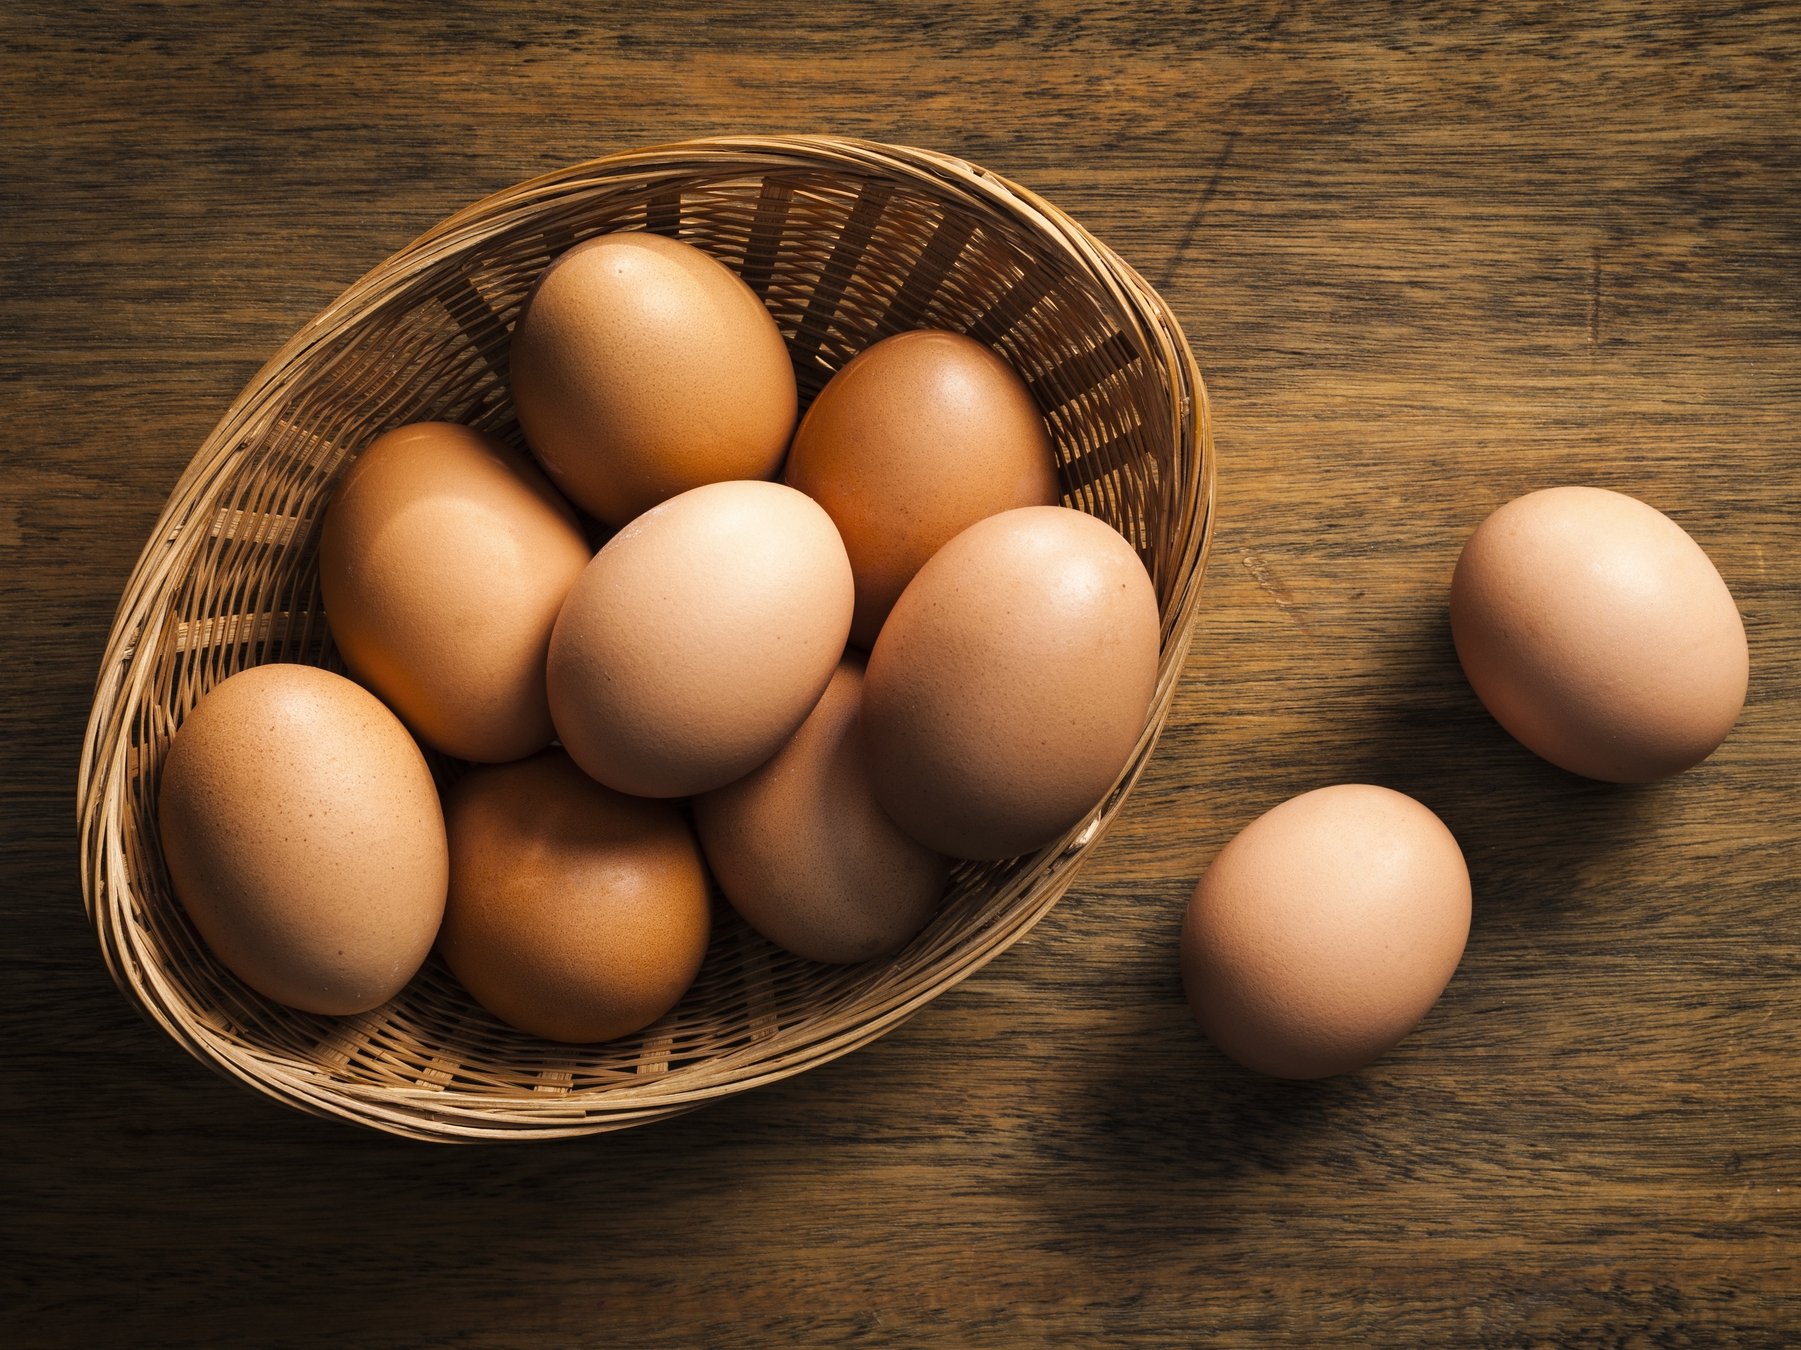 Trứng có nhiều protein, lòng trắng trứng gần như là protein nguyên chất